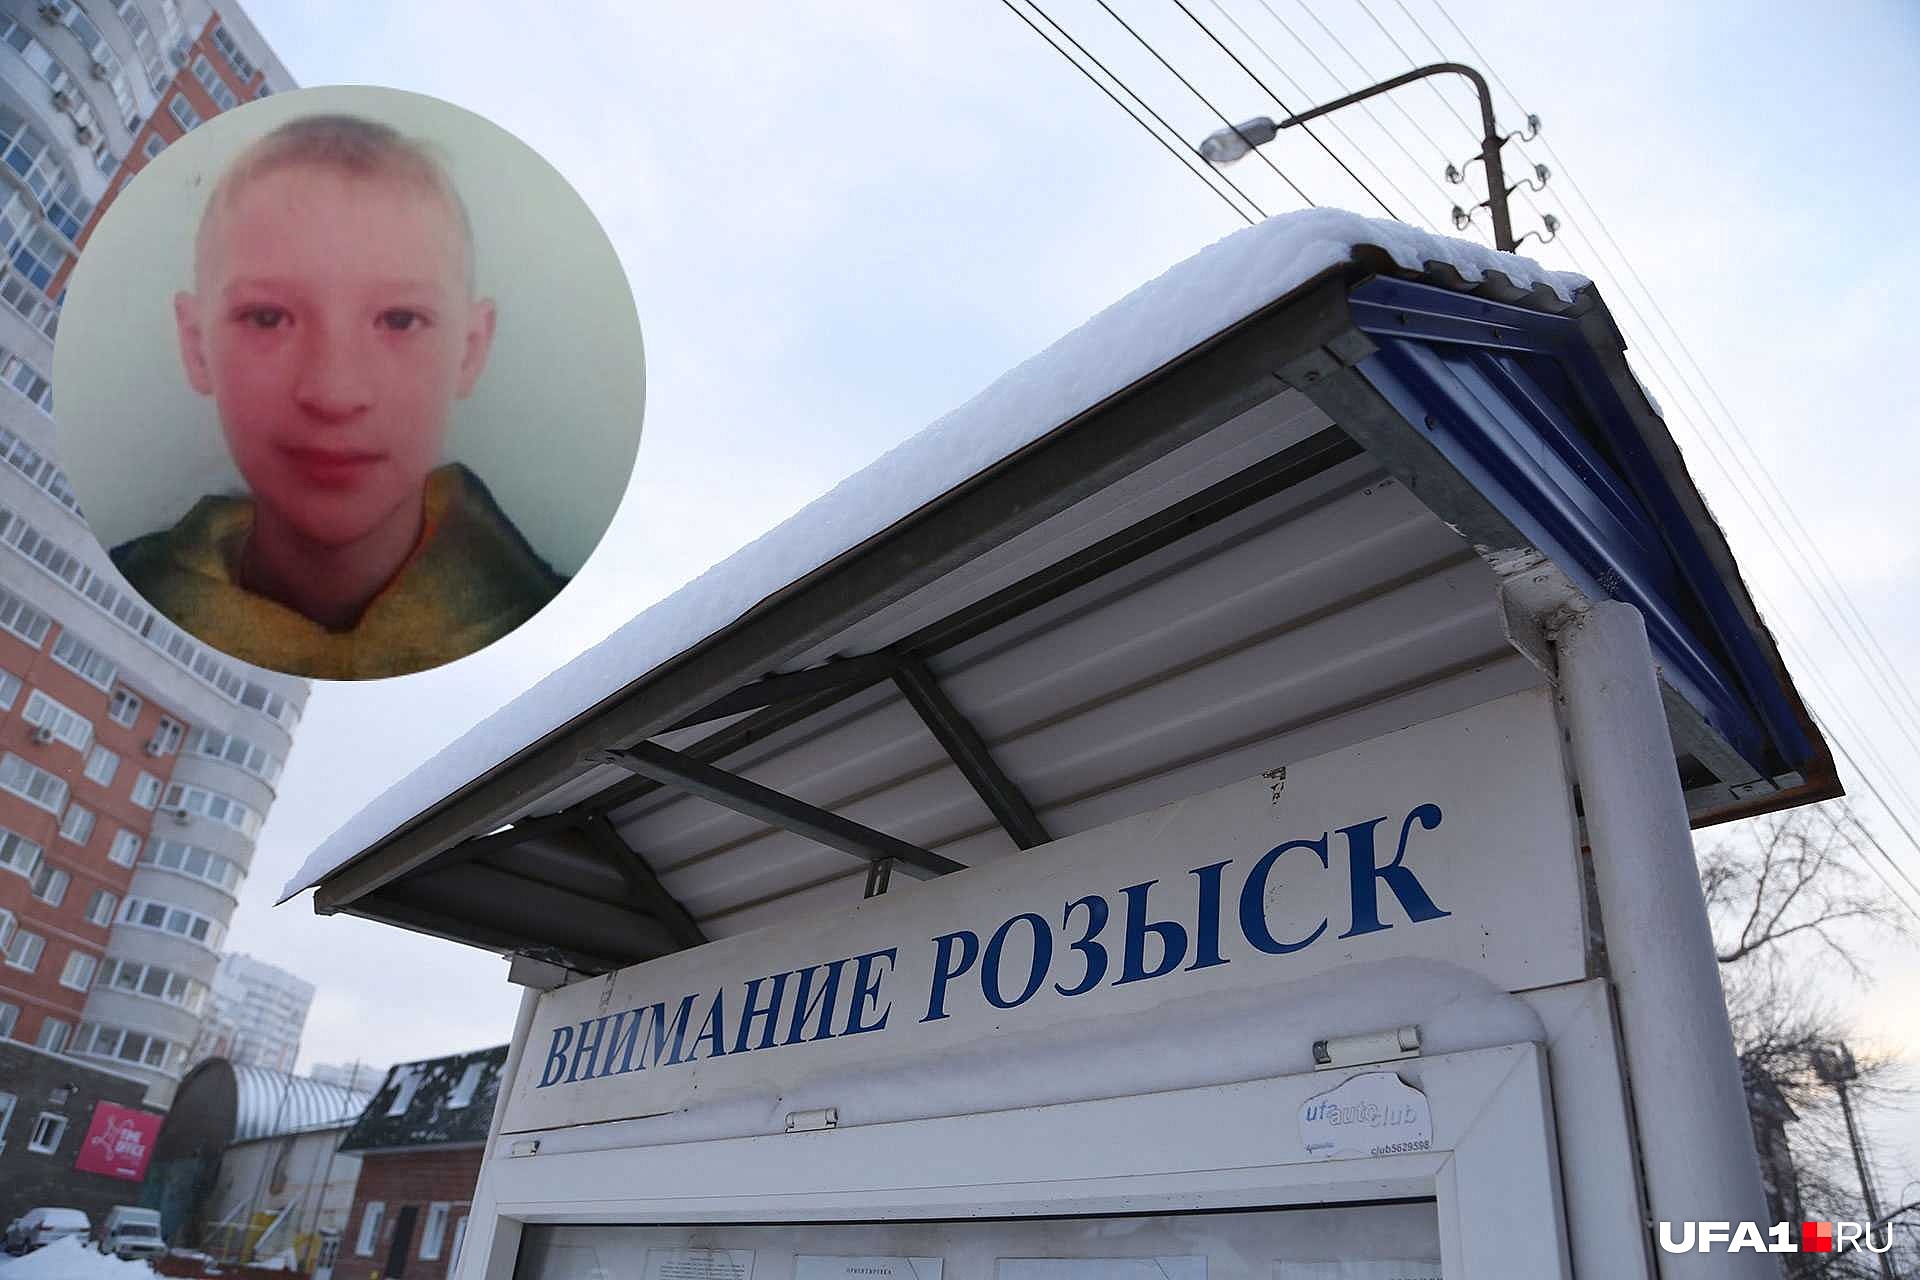 В Уфе пропал без вести 11-летний мальчик с веснушками на лице